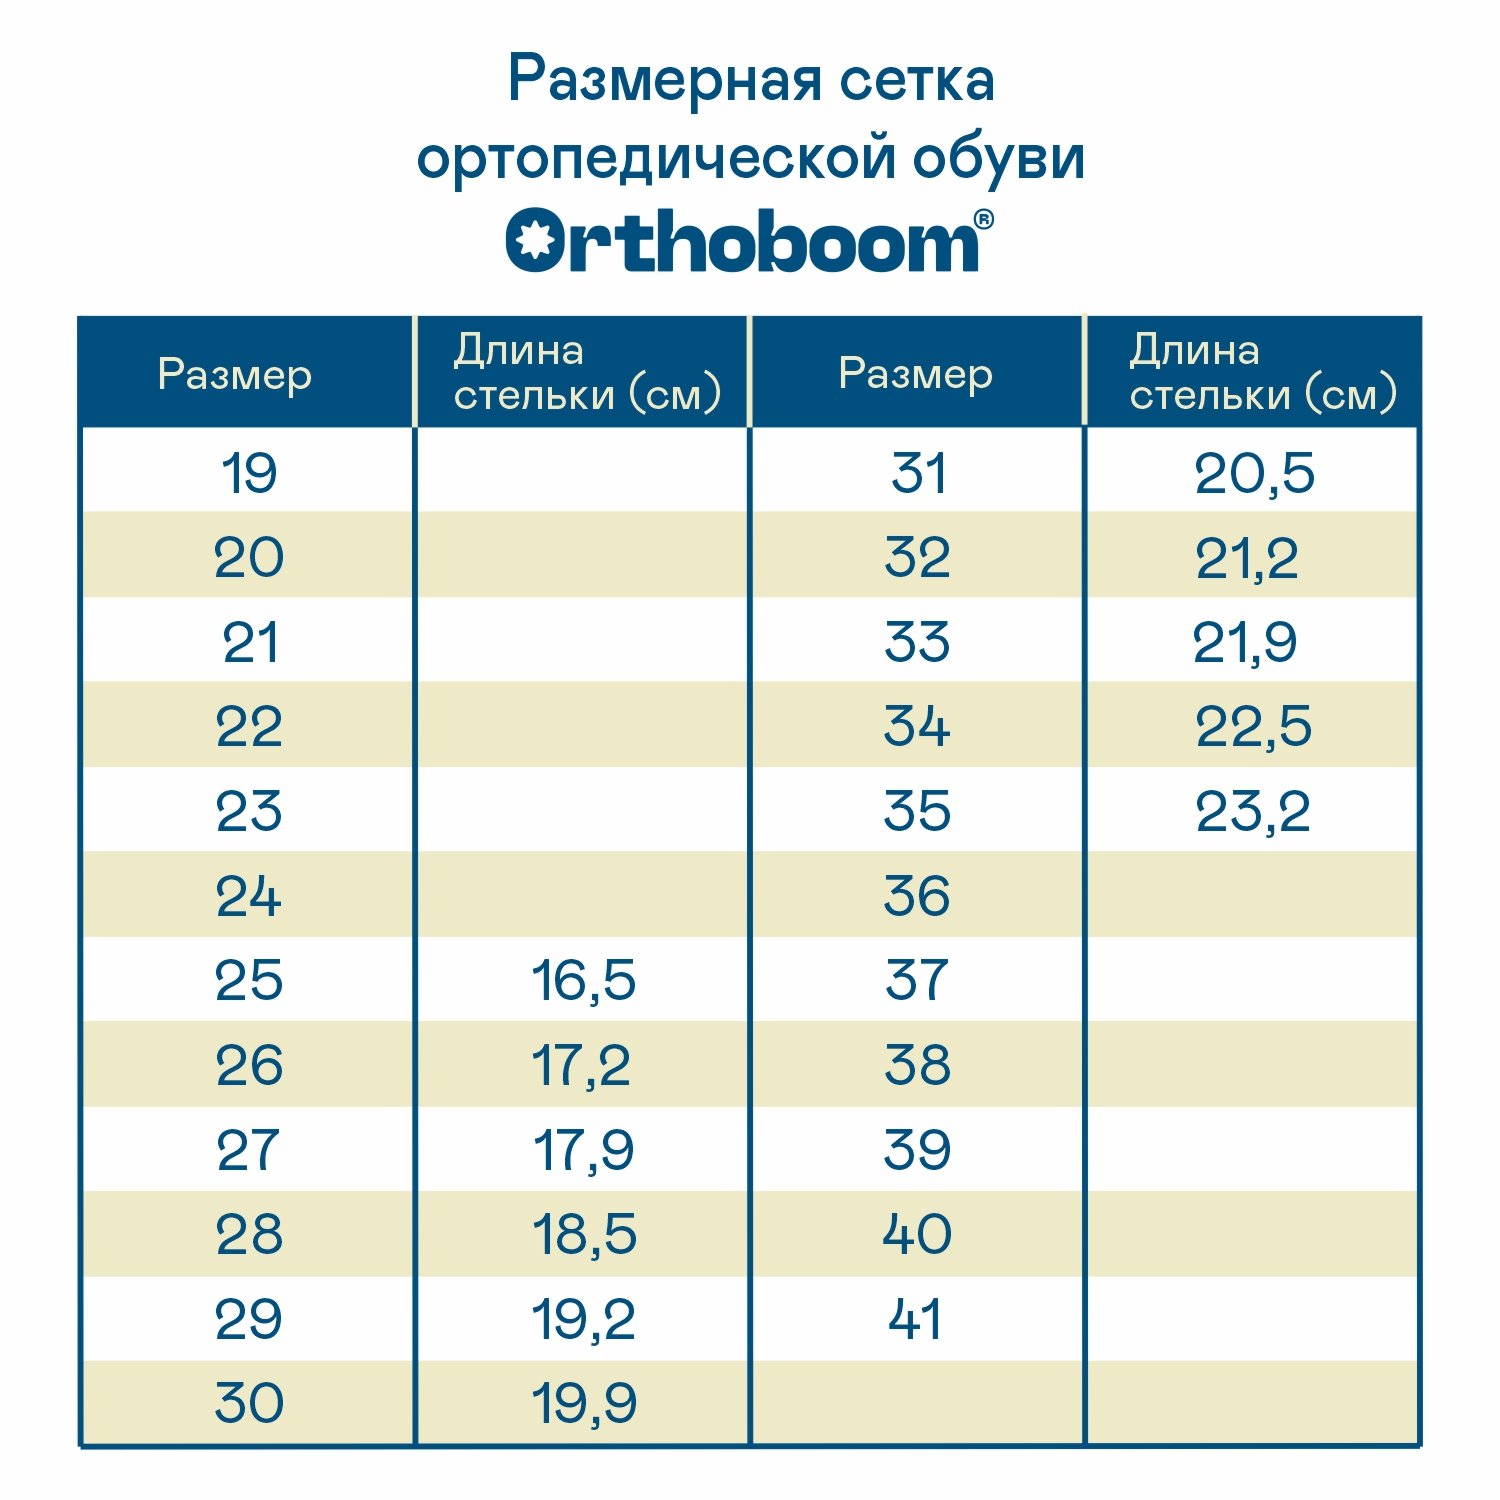 Детские кроссовки ORTHOBOOM 37054-03 персиковый